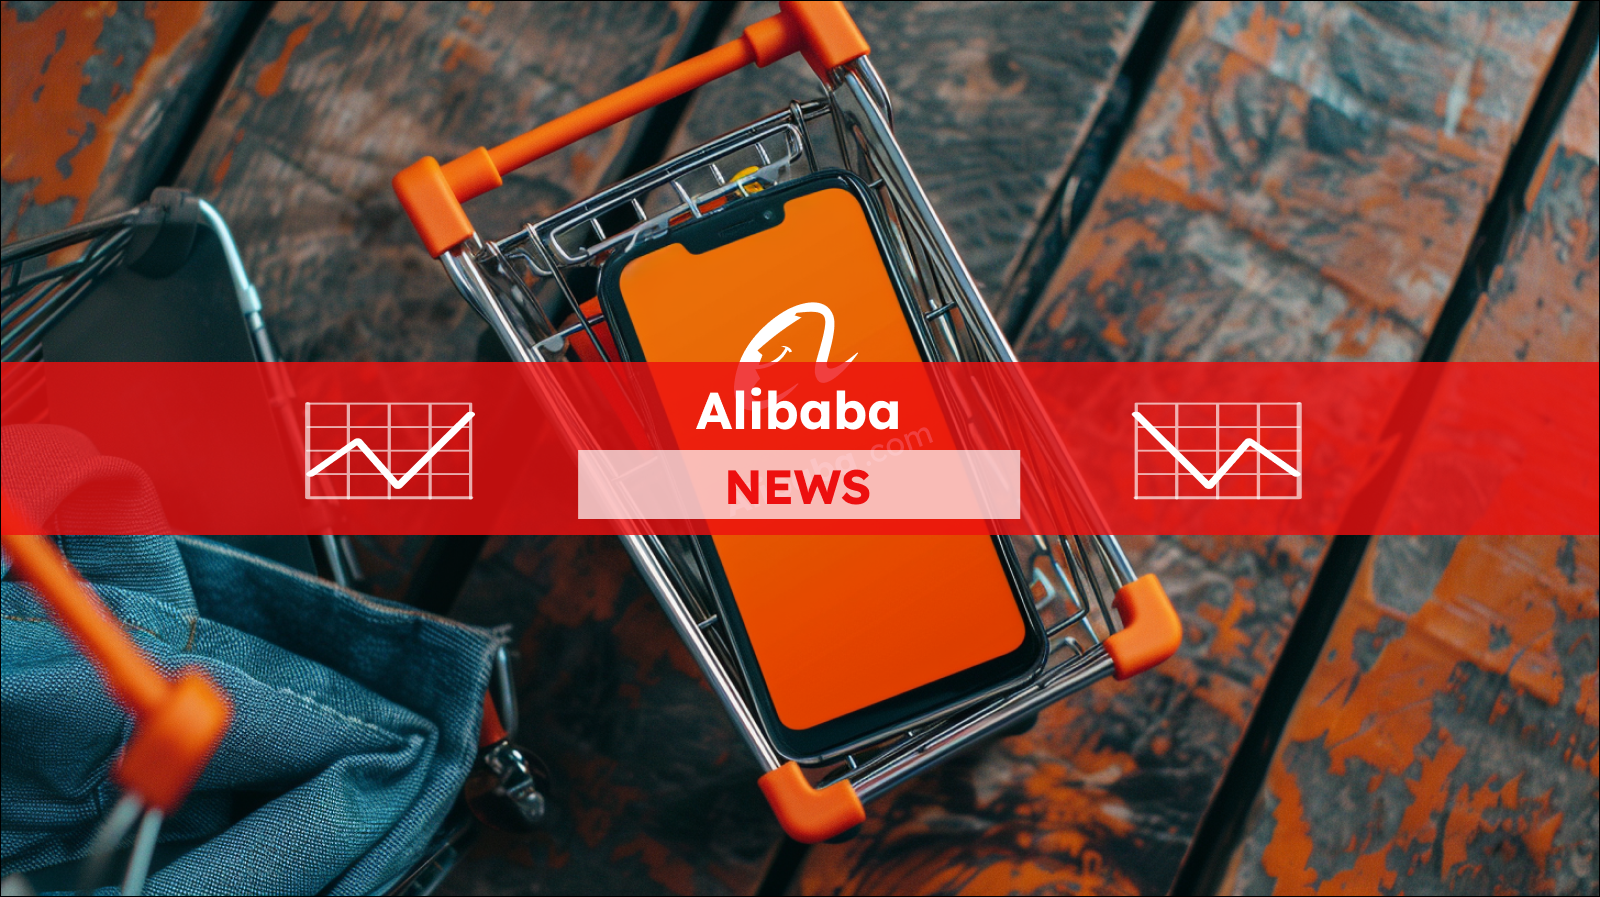 Ein Smartphone mit dem Bildschirm, der das Alibaba-Logo zeigt, liegt in einem Miniatur-Einkaufswagen,  mit einem Alibaba NEWS Banner